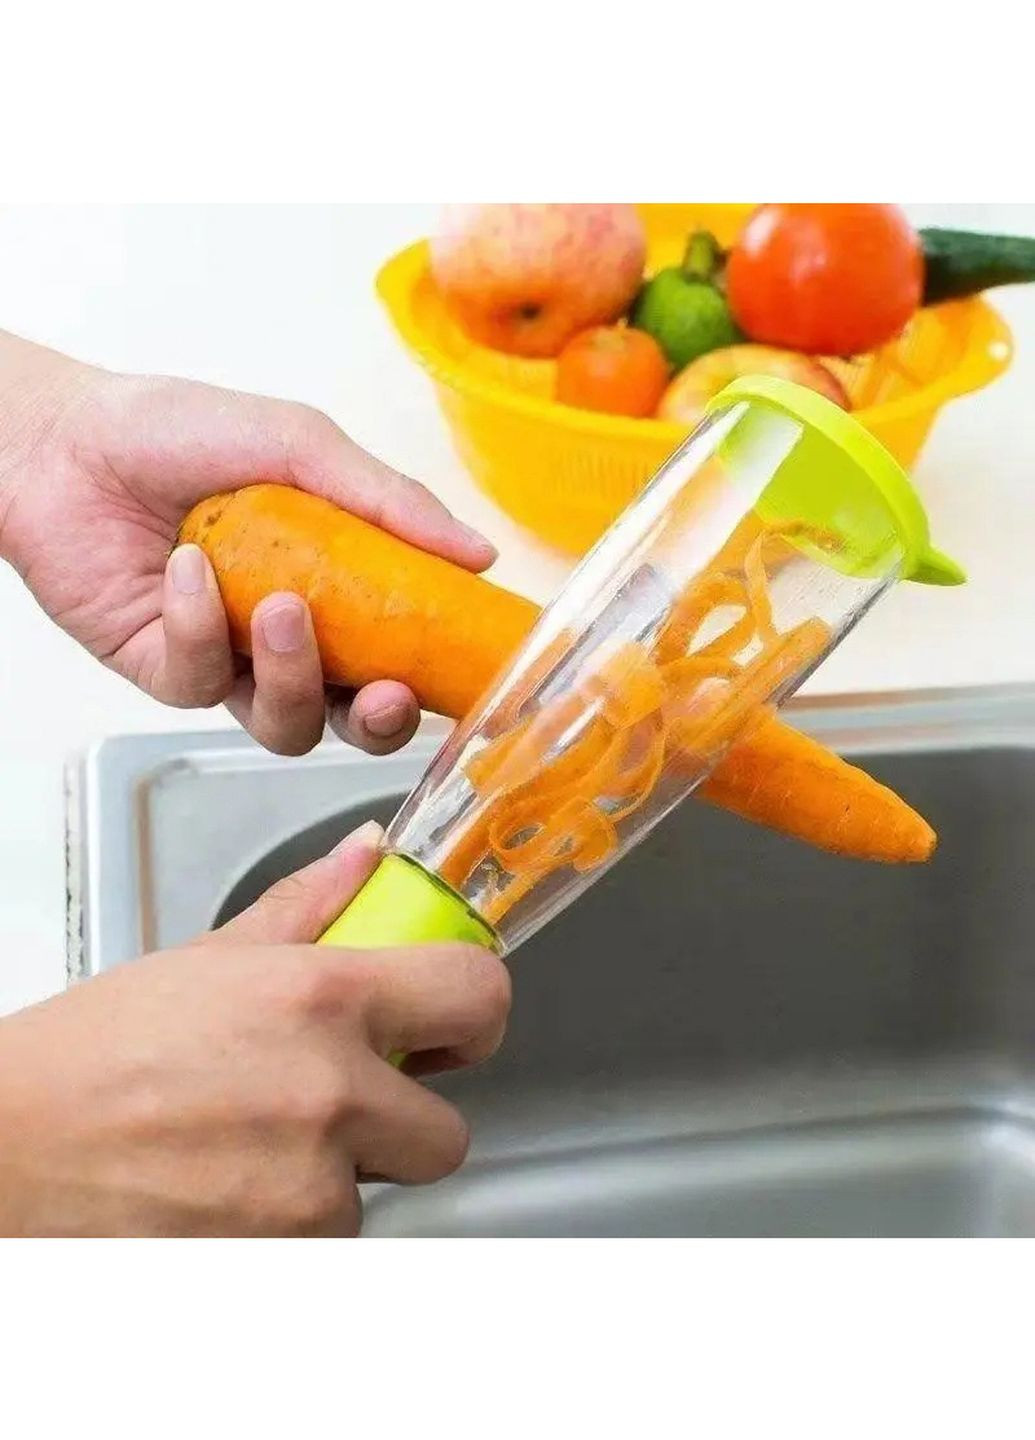 Овощечистка с контейнером нож экономка для тонкой чистки овощей и фруктов Kitchen Master (263931699)